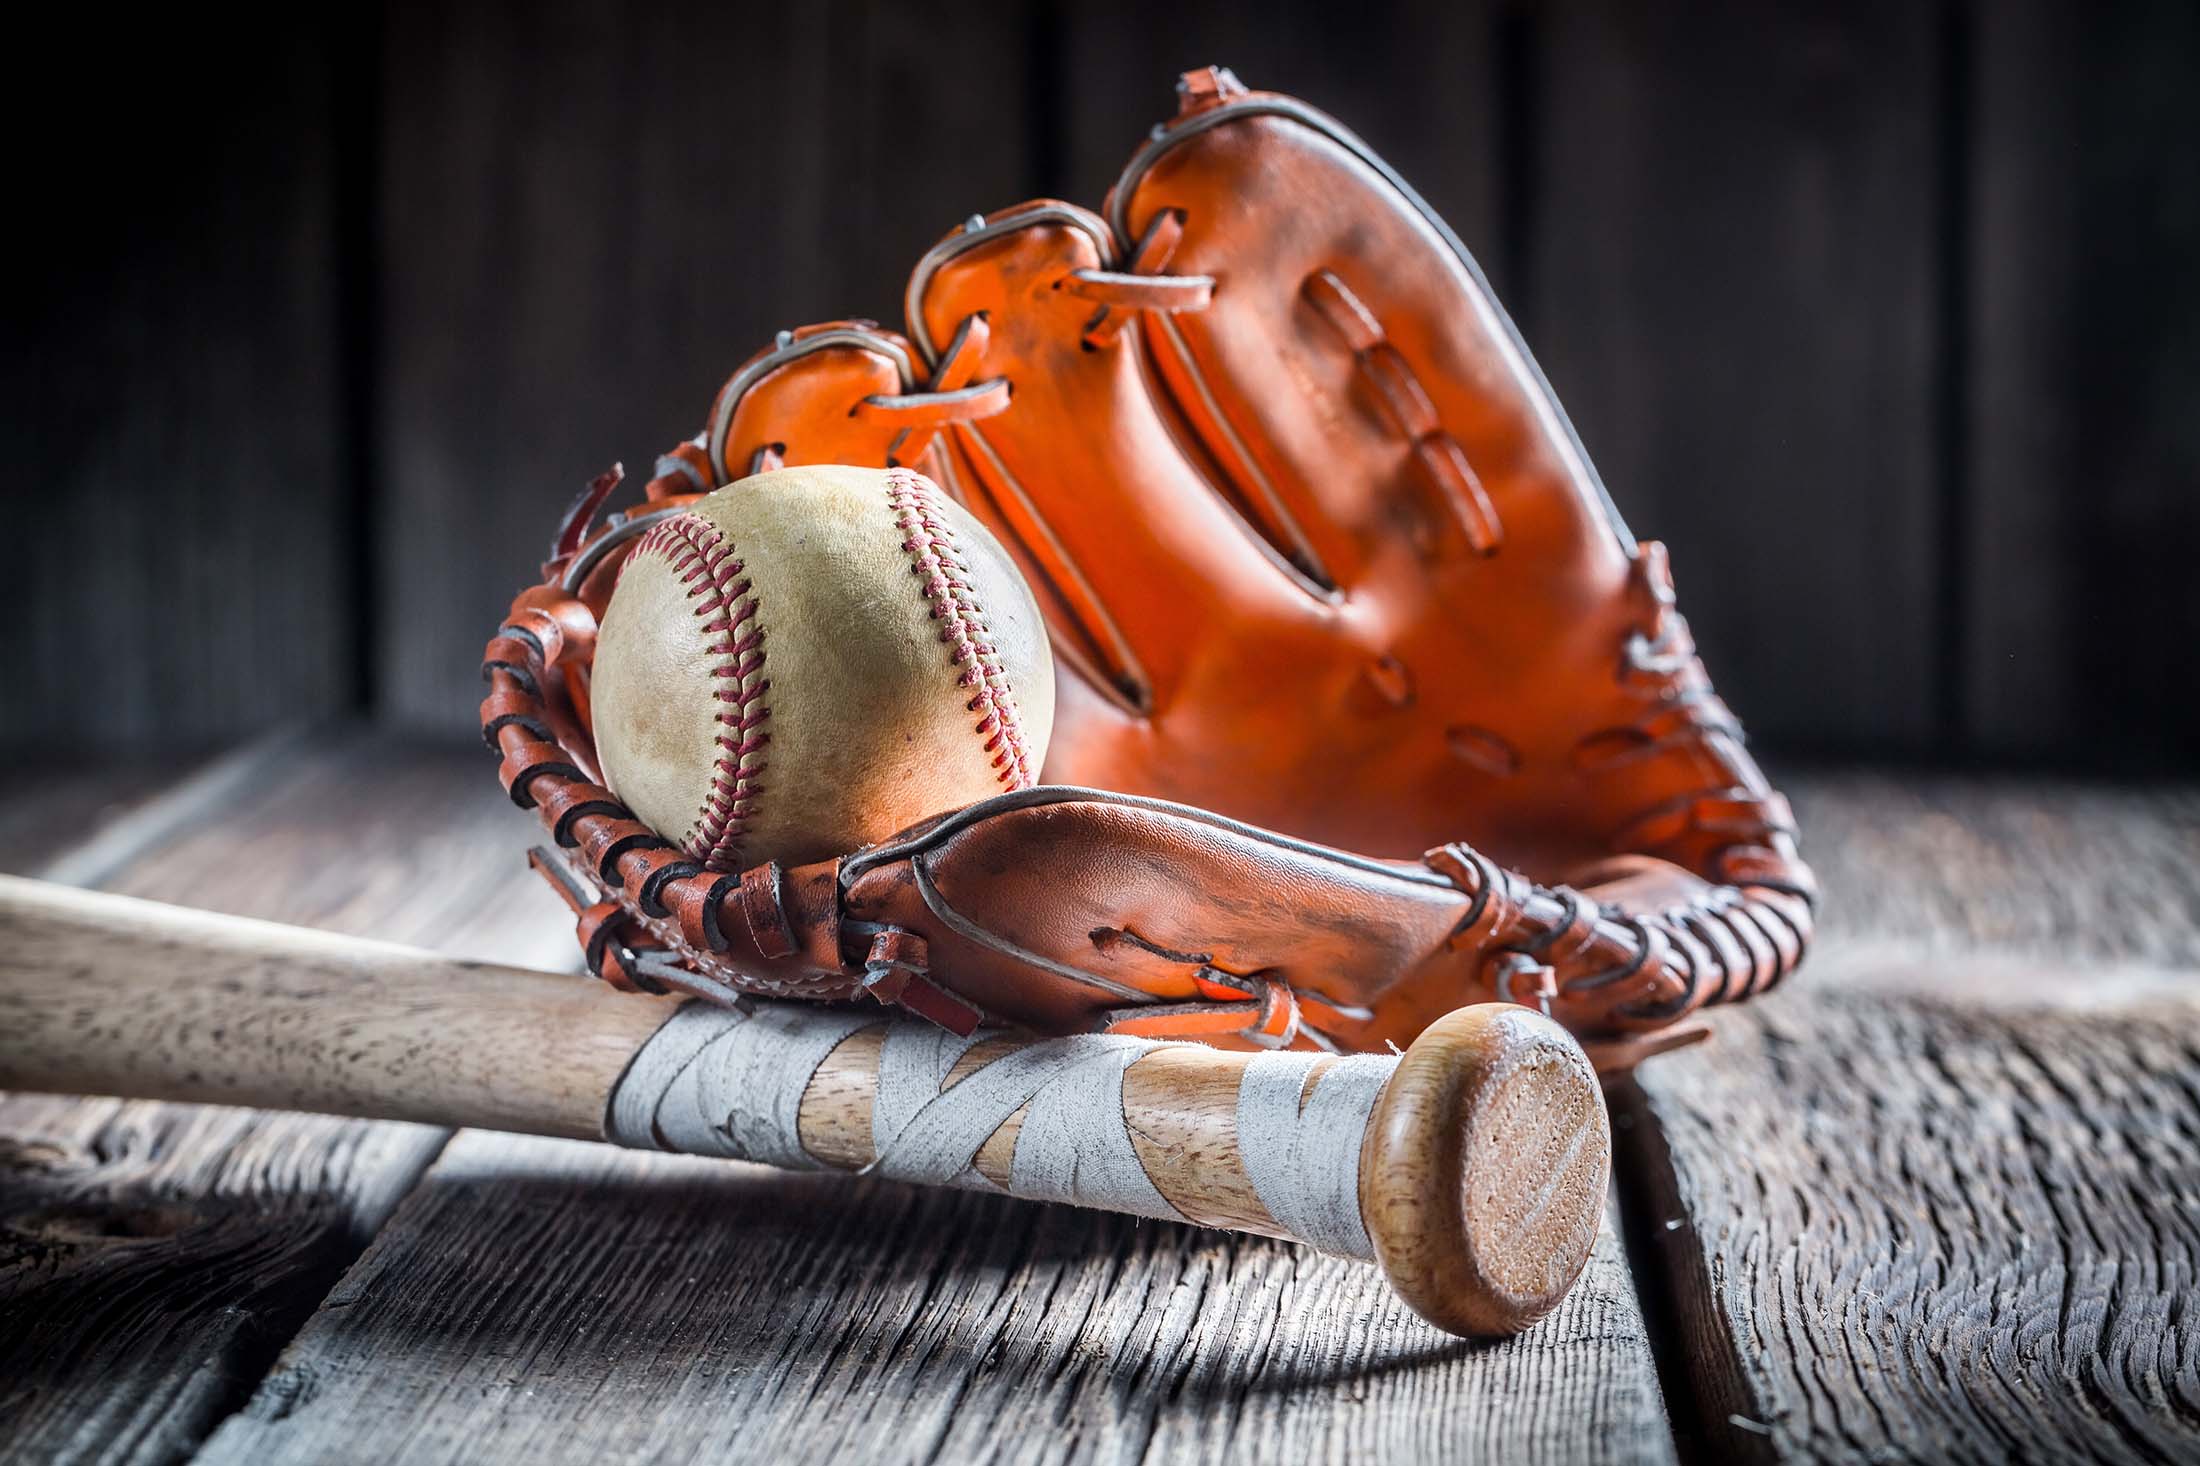 Baseball, glove, and bat